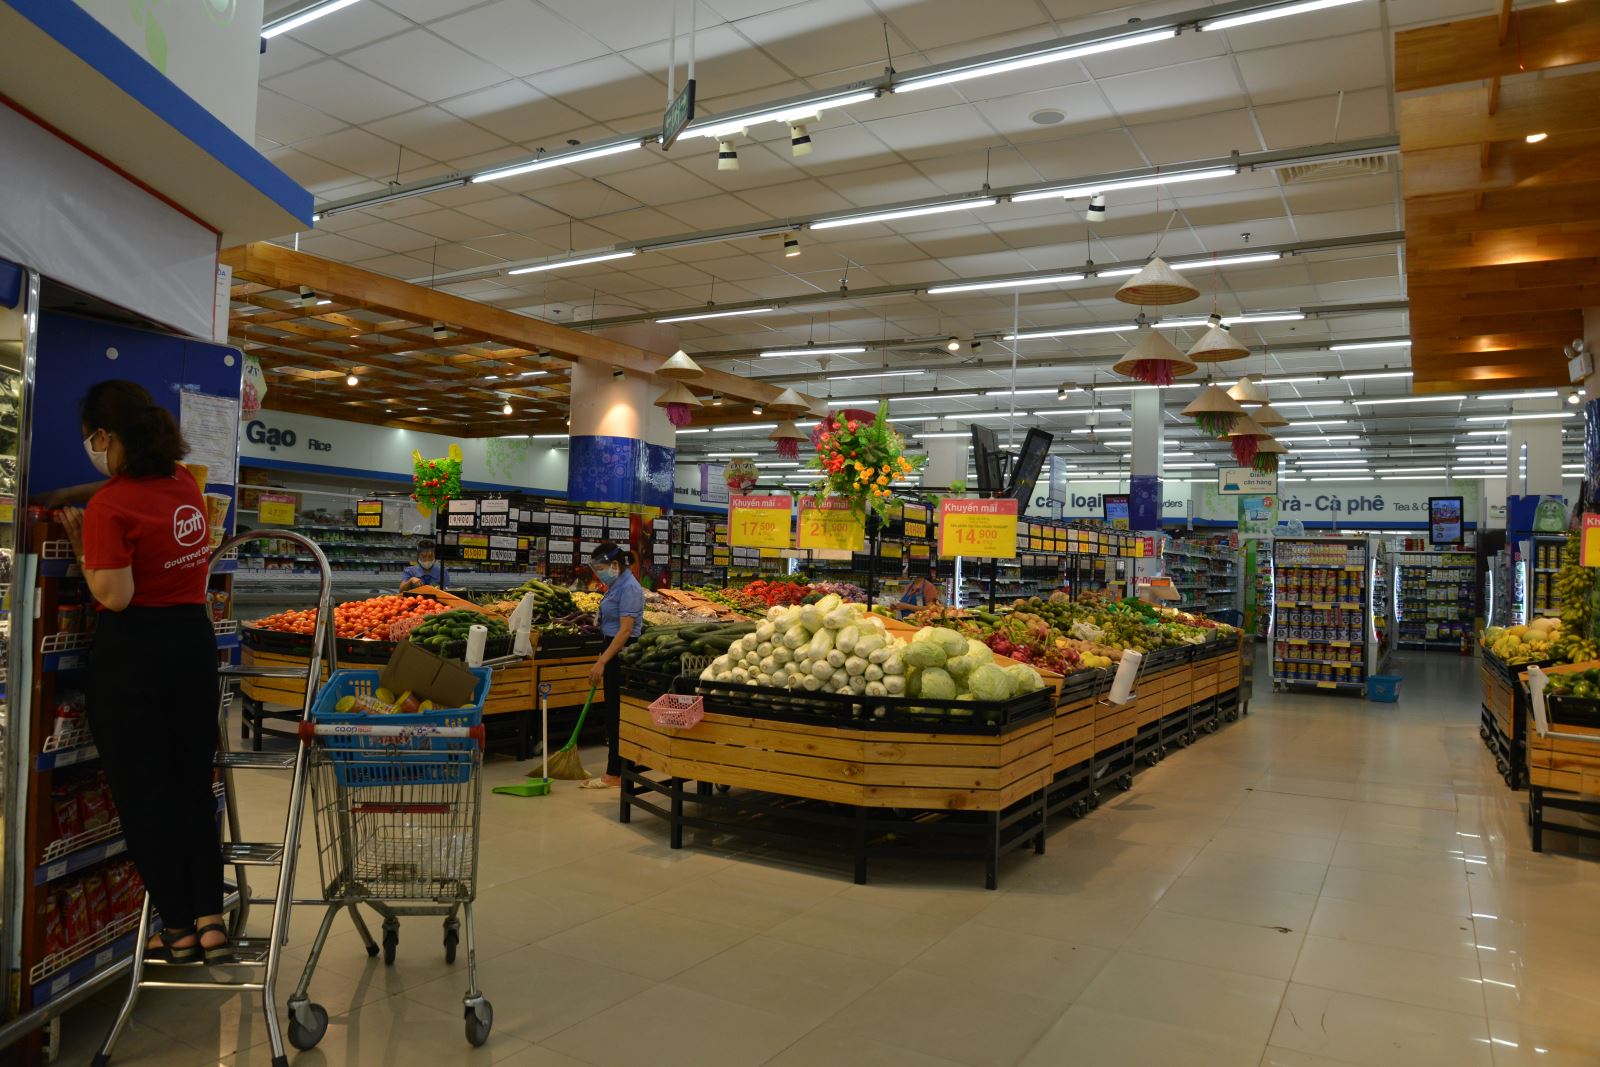 Coopmart Hà Tĩnh mở cửa phục vụ người dân xuyên suốt mùa dịch